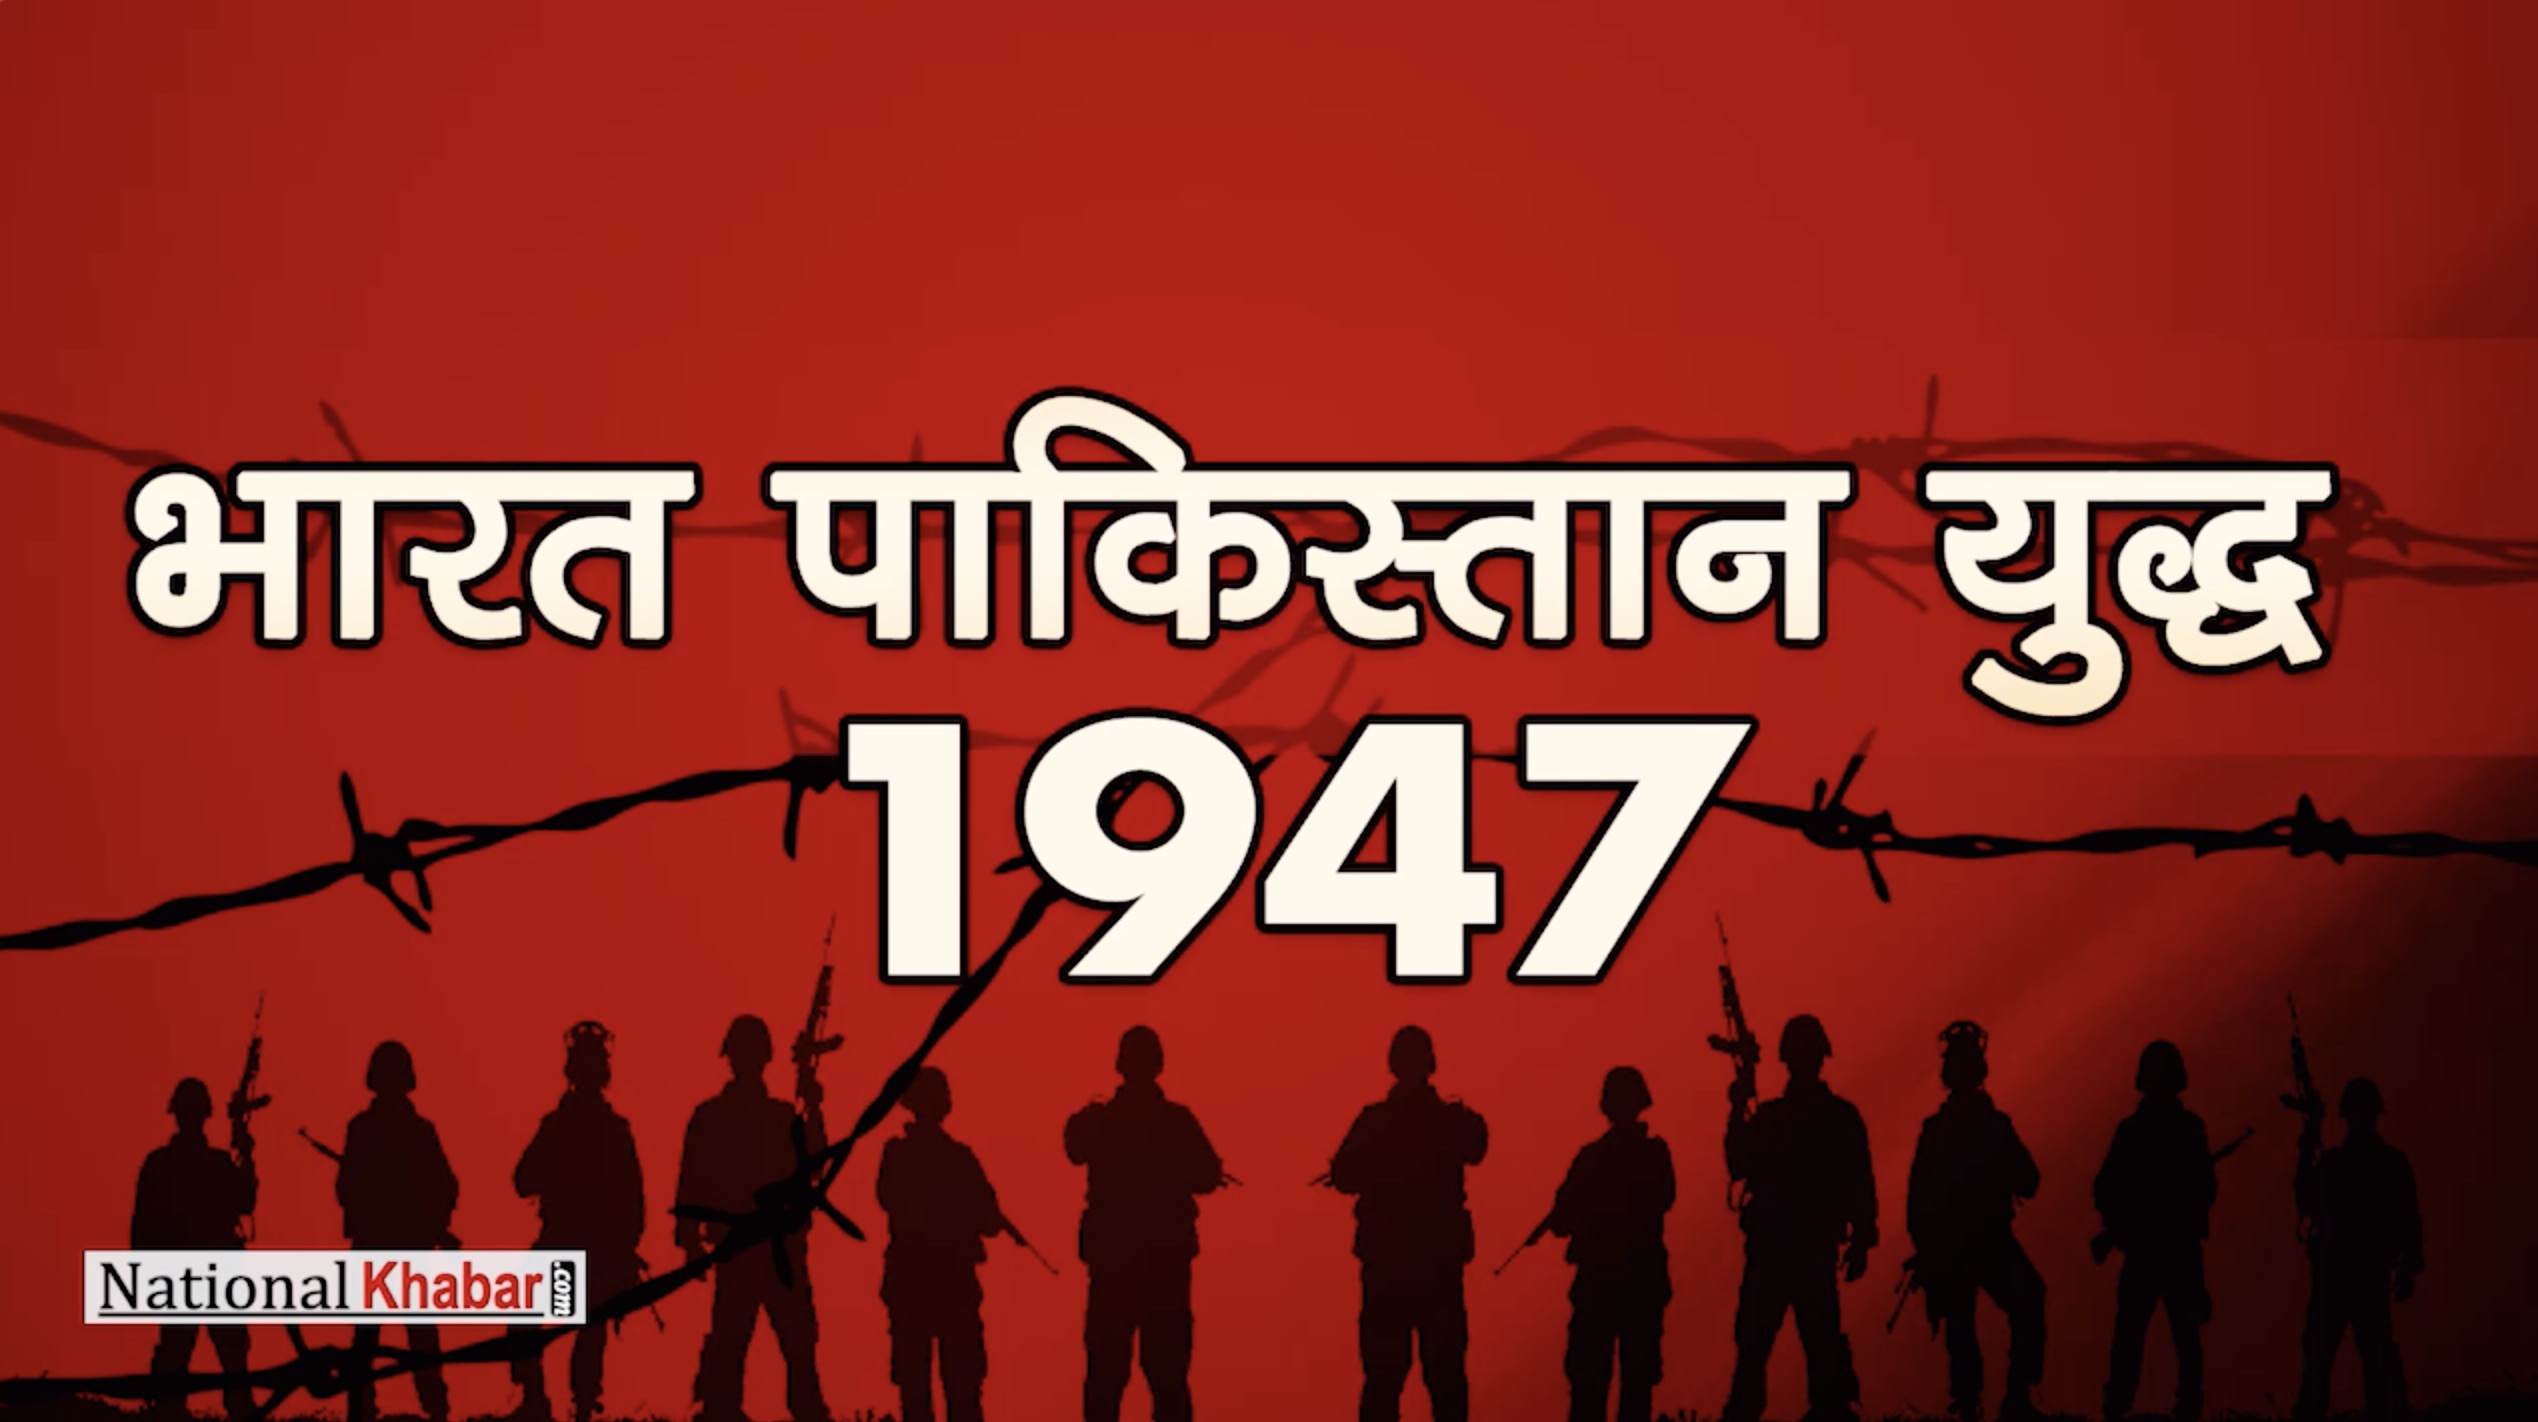 भारत - युद्ध की विजय गाथा